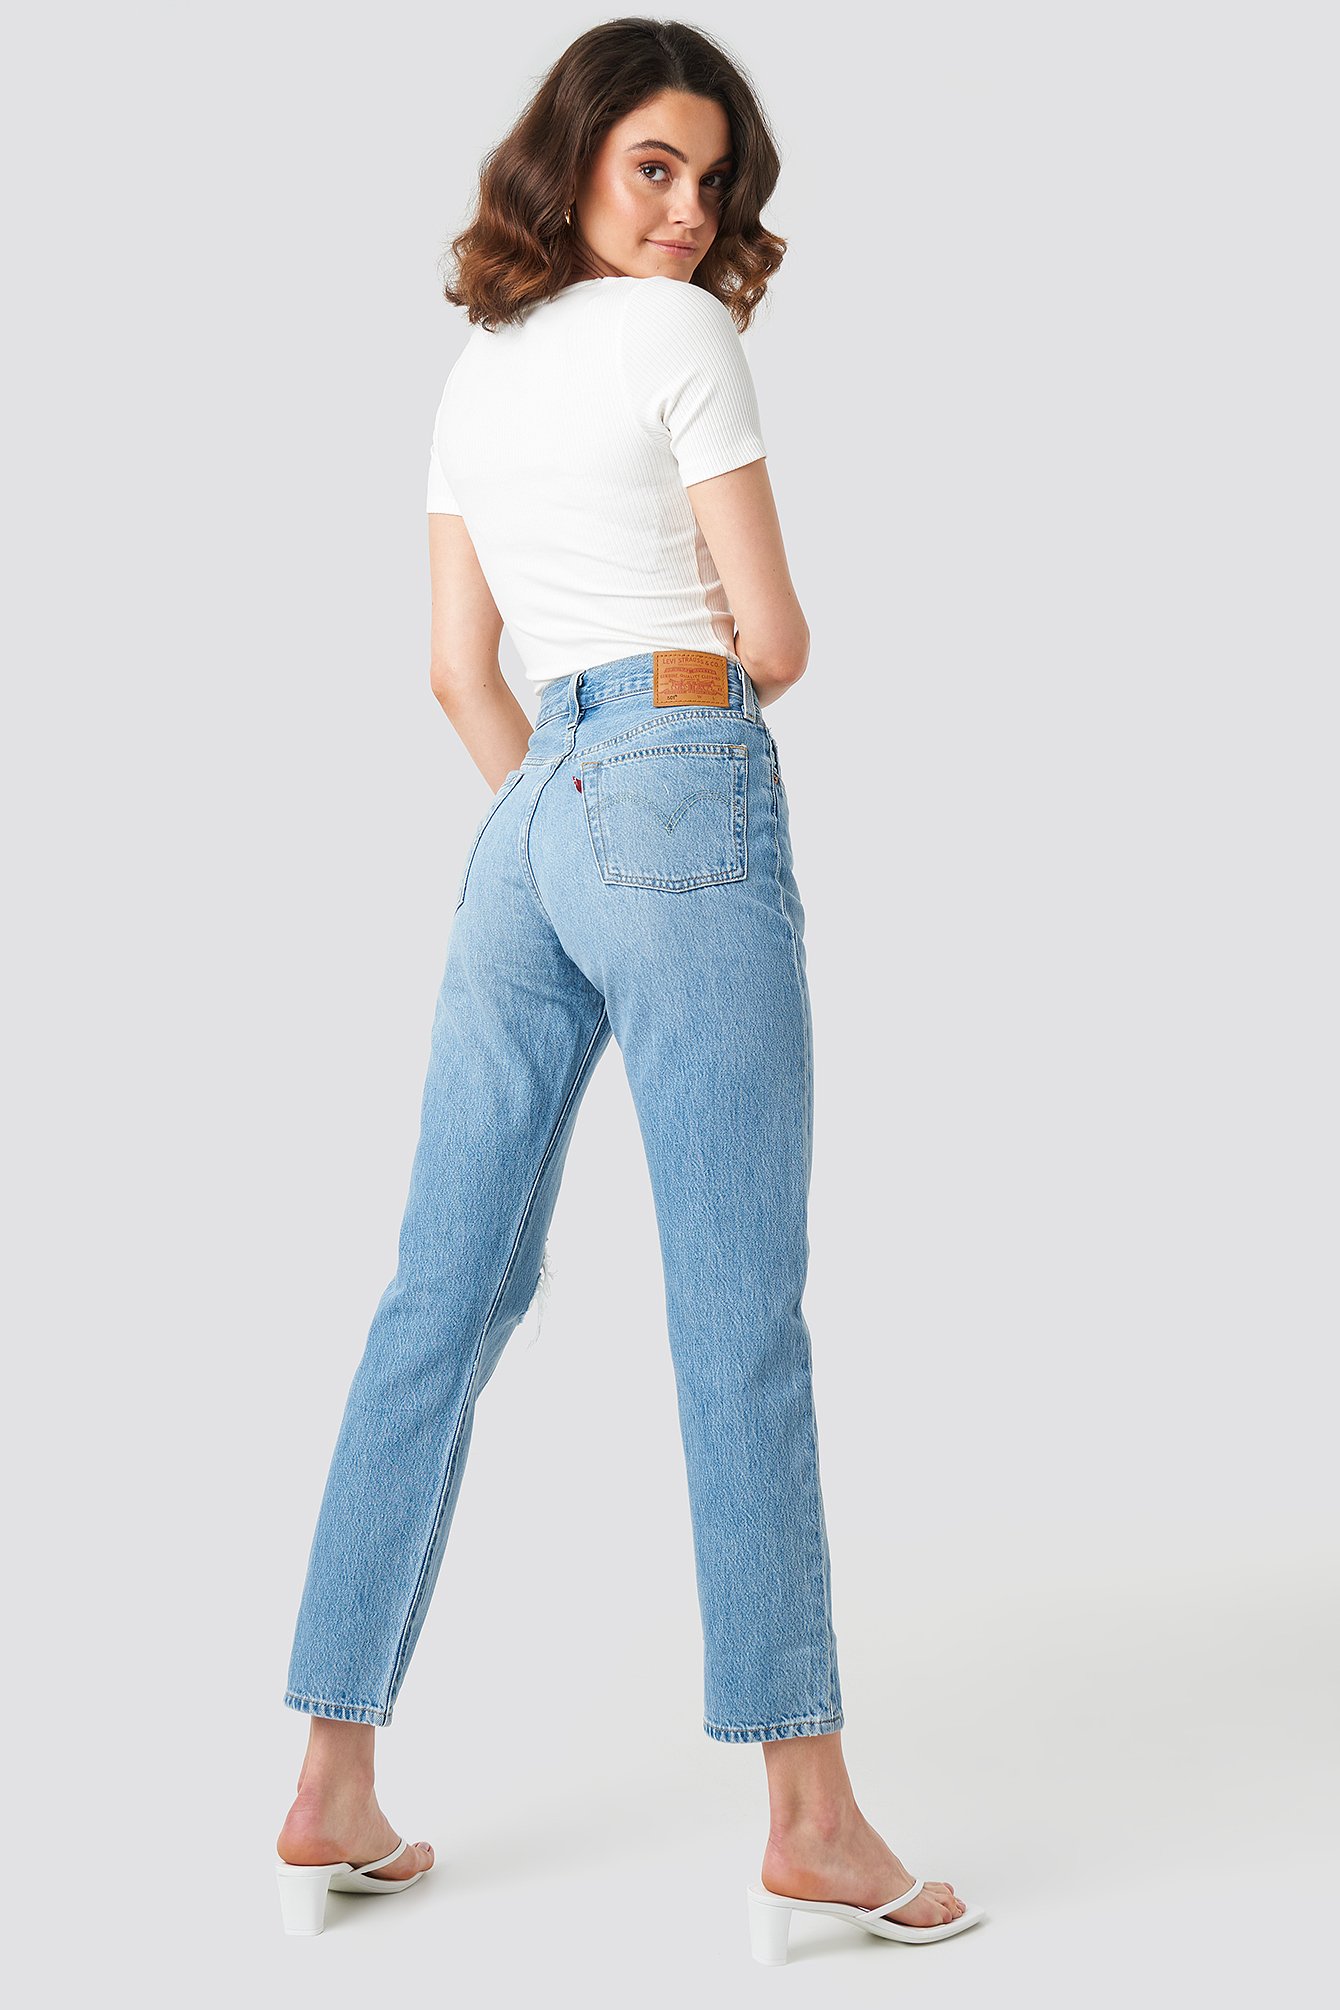 501 crop jeans levi's